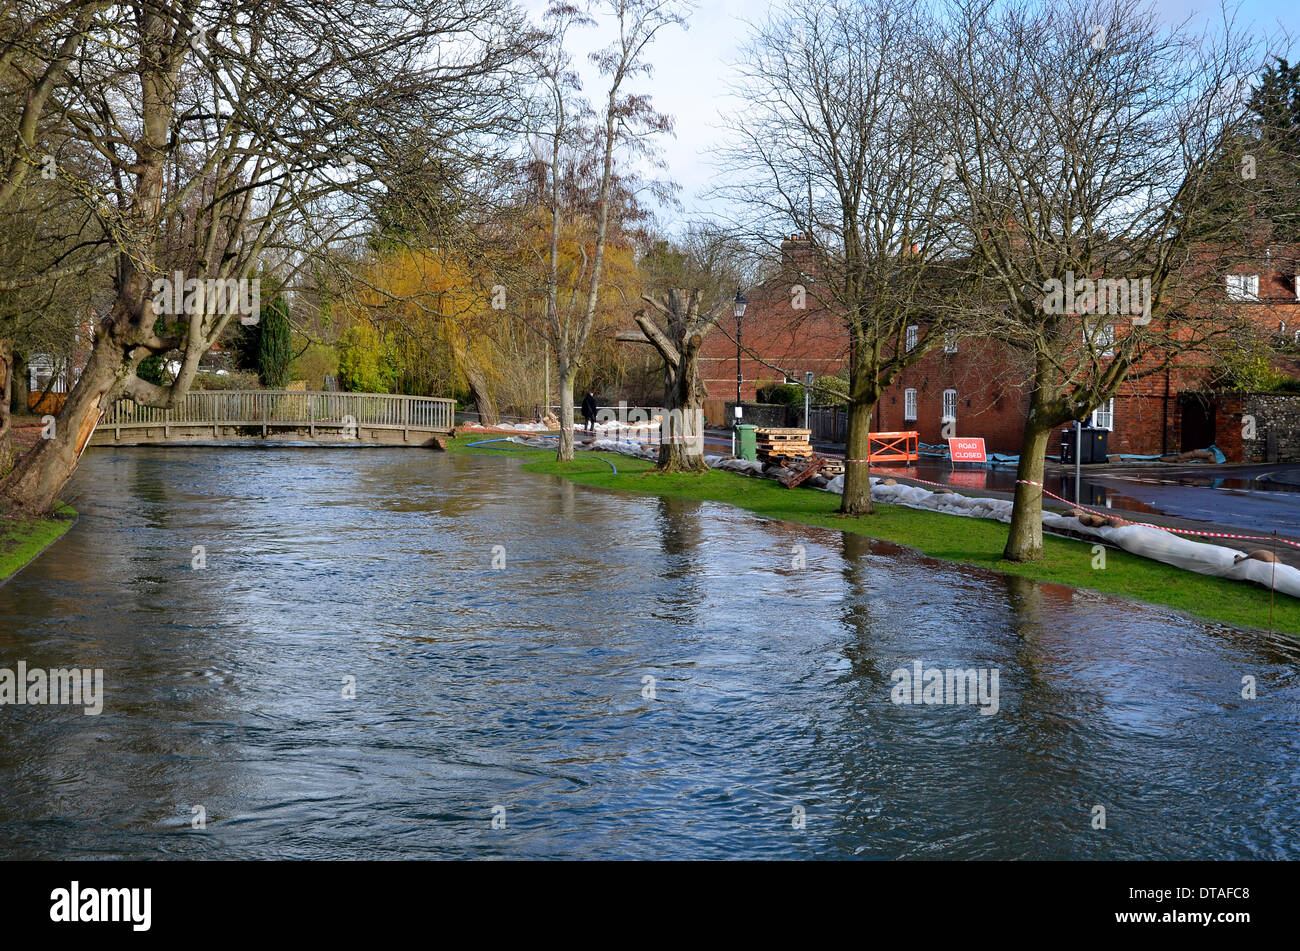 Il fiume Itchen trabocca lungo la corsia di acqua vicino al centro della città di Winchester, il capoluogo della contea di Hampshire. Il personale della marina militare hanno eretto contrappeso bunds nel tentativo di contenere l'acqua ed evitare le inondazioni di proprietà. Foto Stock